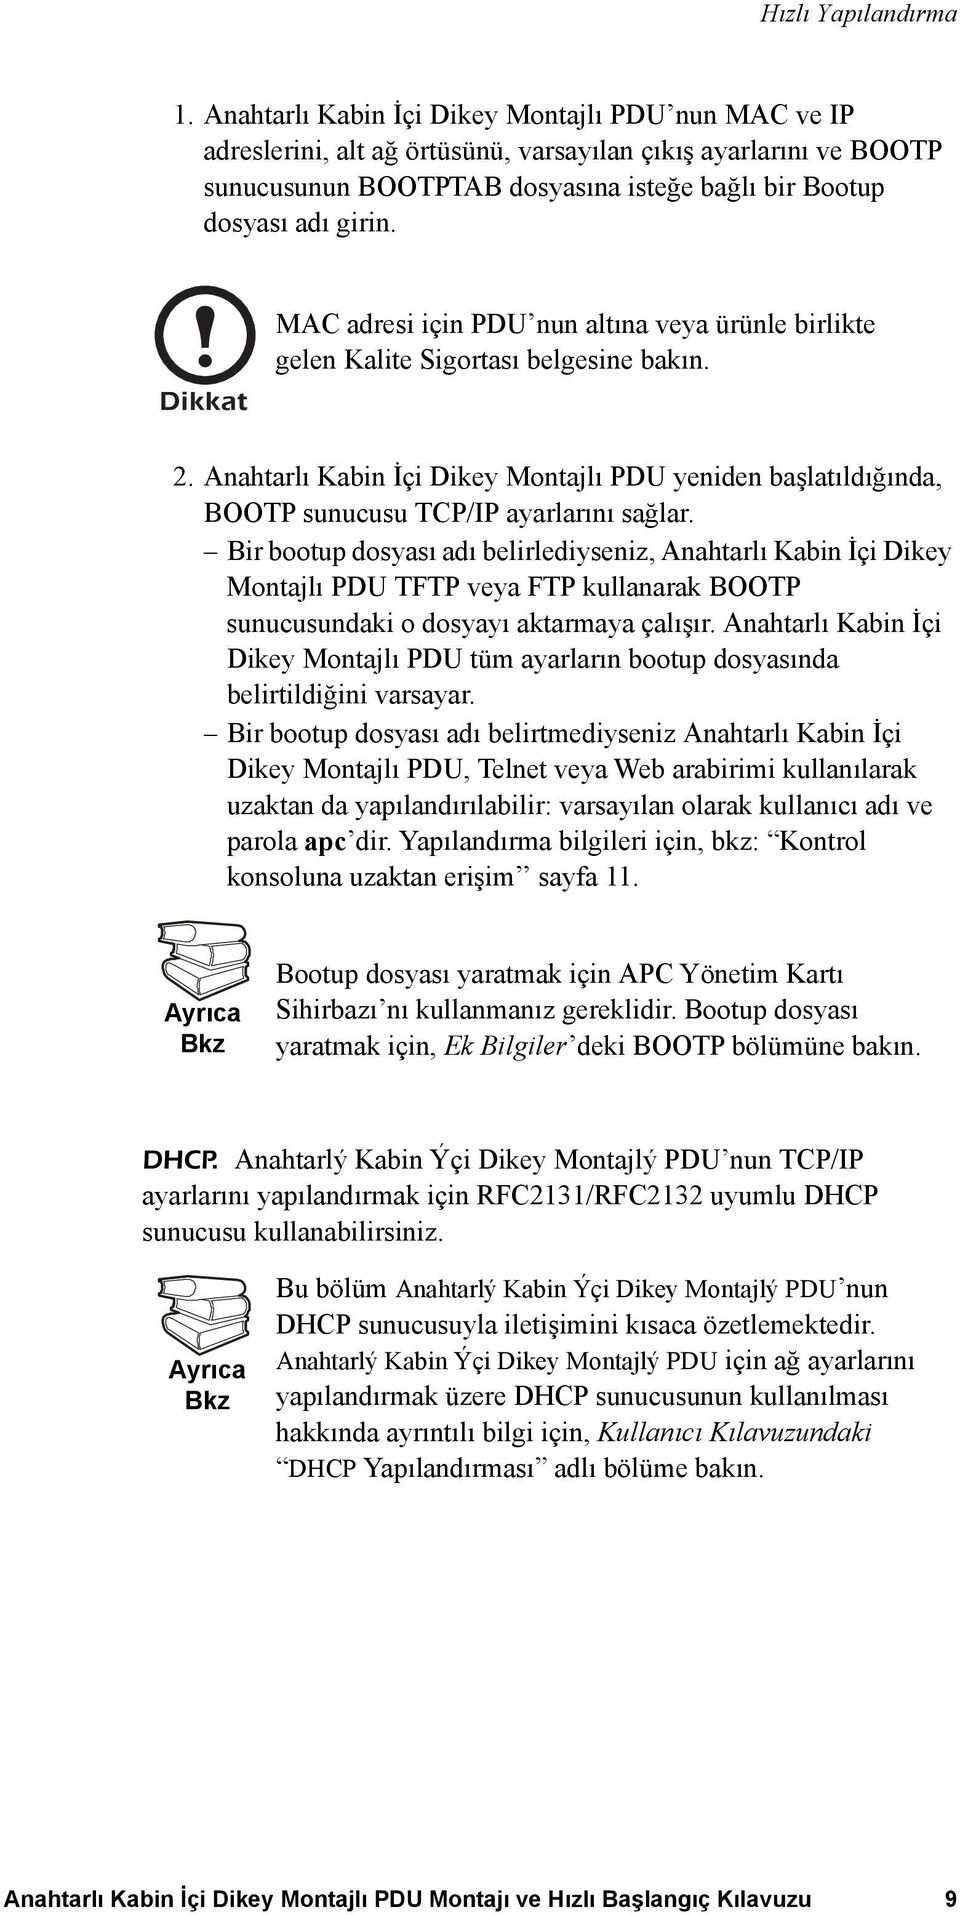 MAC adresi için PDU nun altına veya ürünle birlikte gelen Kalite Sigortası belgesine bakın. 2. Anahtarlı Kabin İçi Dikey Montajlı PDU yeniden başlatıldığında, BOOTP sunucusu TCP/IP ayarlarını sağlar.